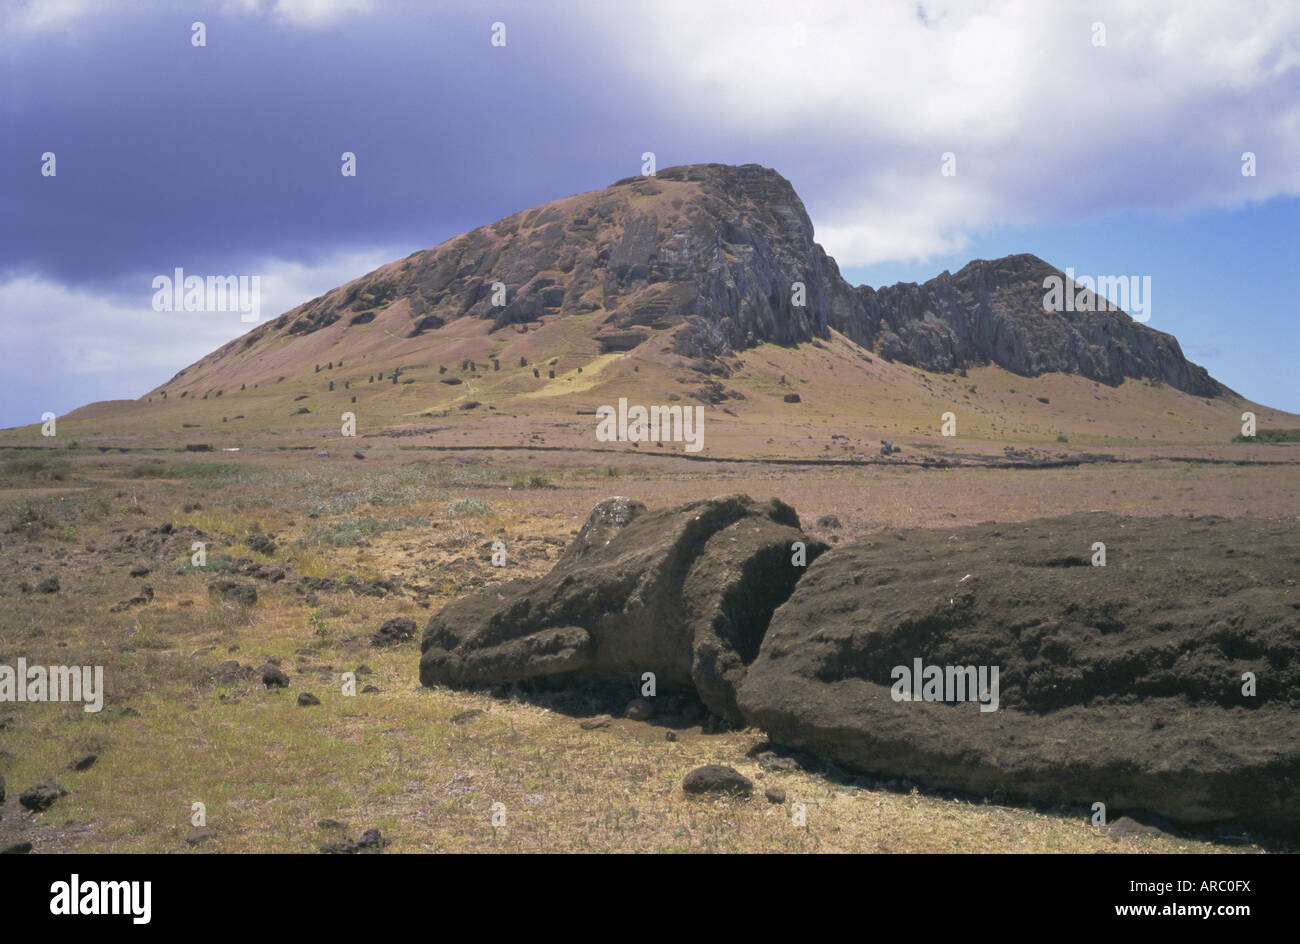 Geburtsstätte der Moais, mit zahlreichen Köpfen hinterlassen Pisten, Volcan Rano Raraku, Nationalpark Rapa Nui, Osterinsel, Chile Stockfoto